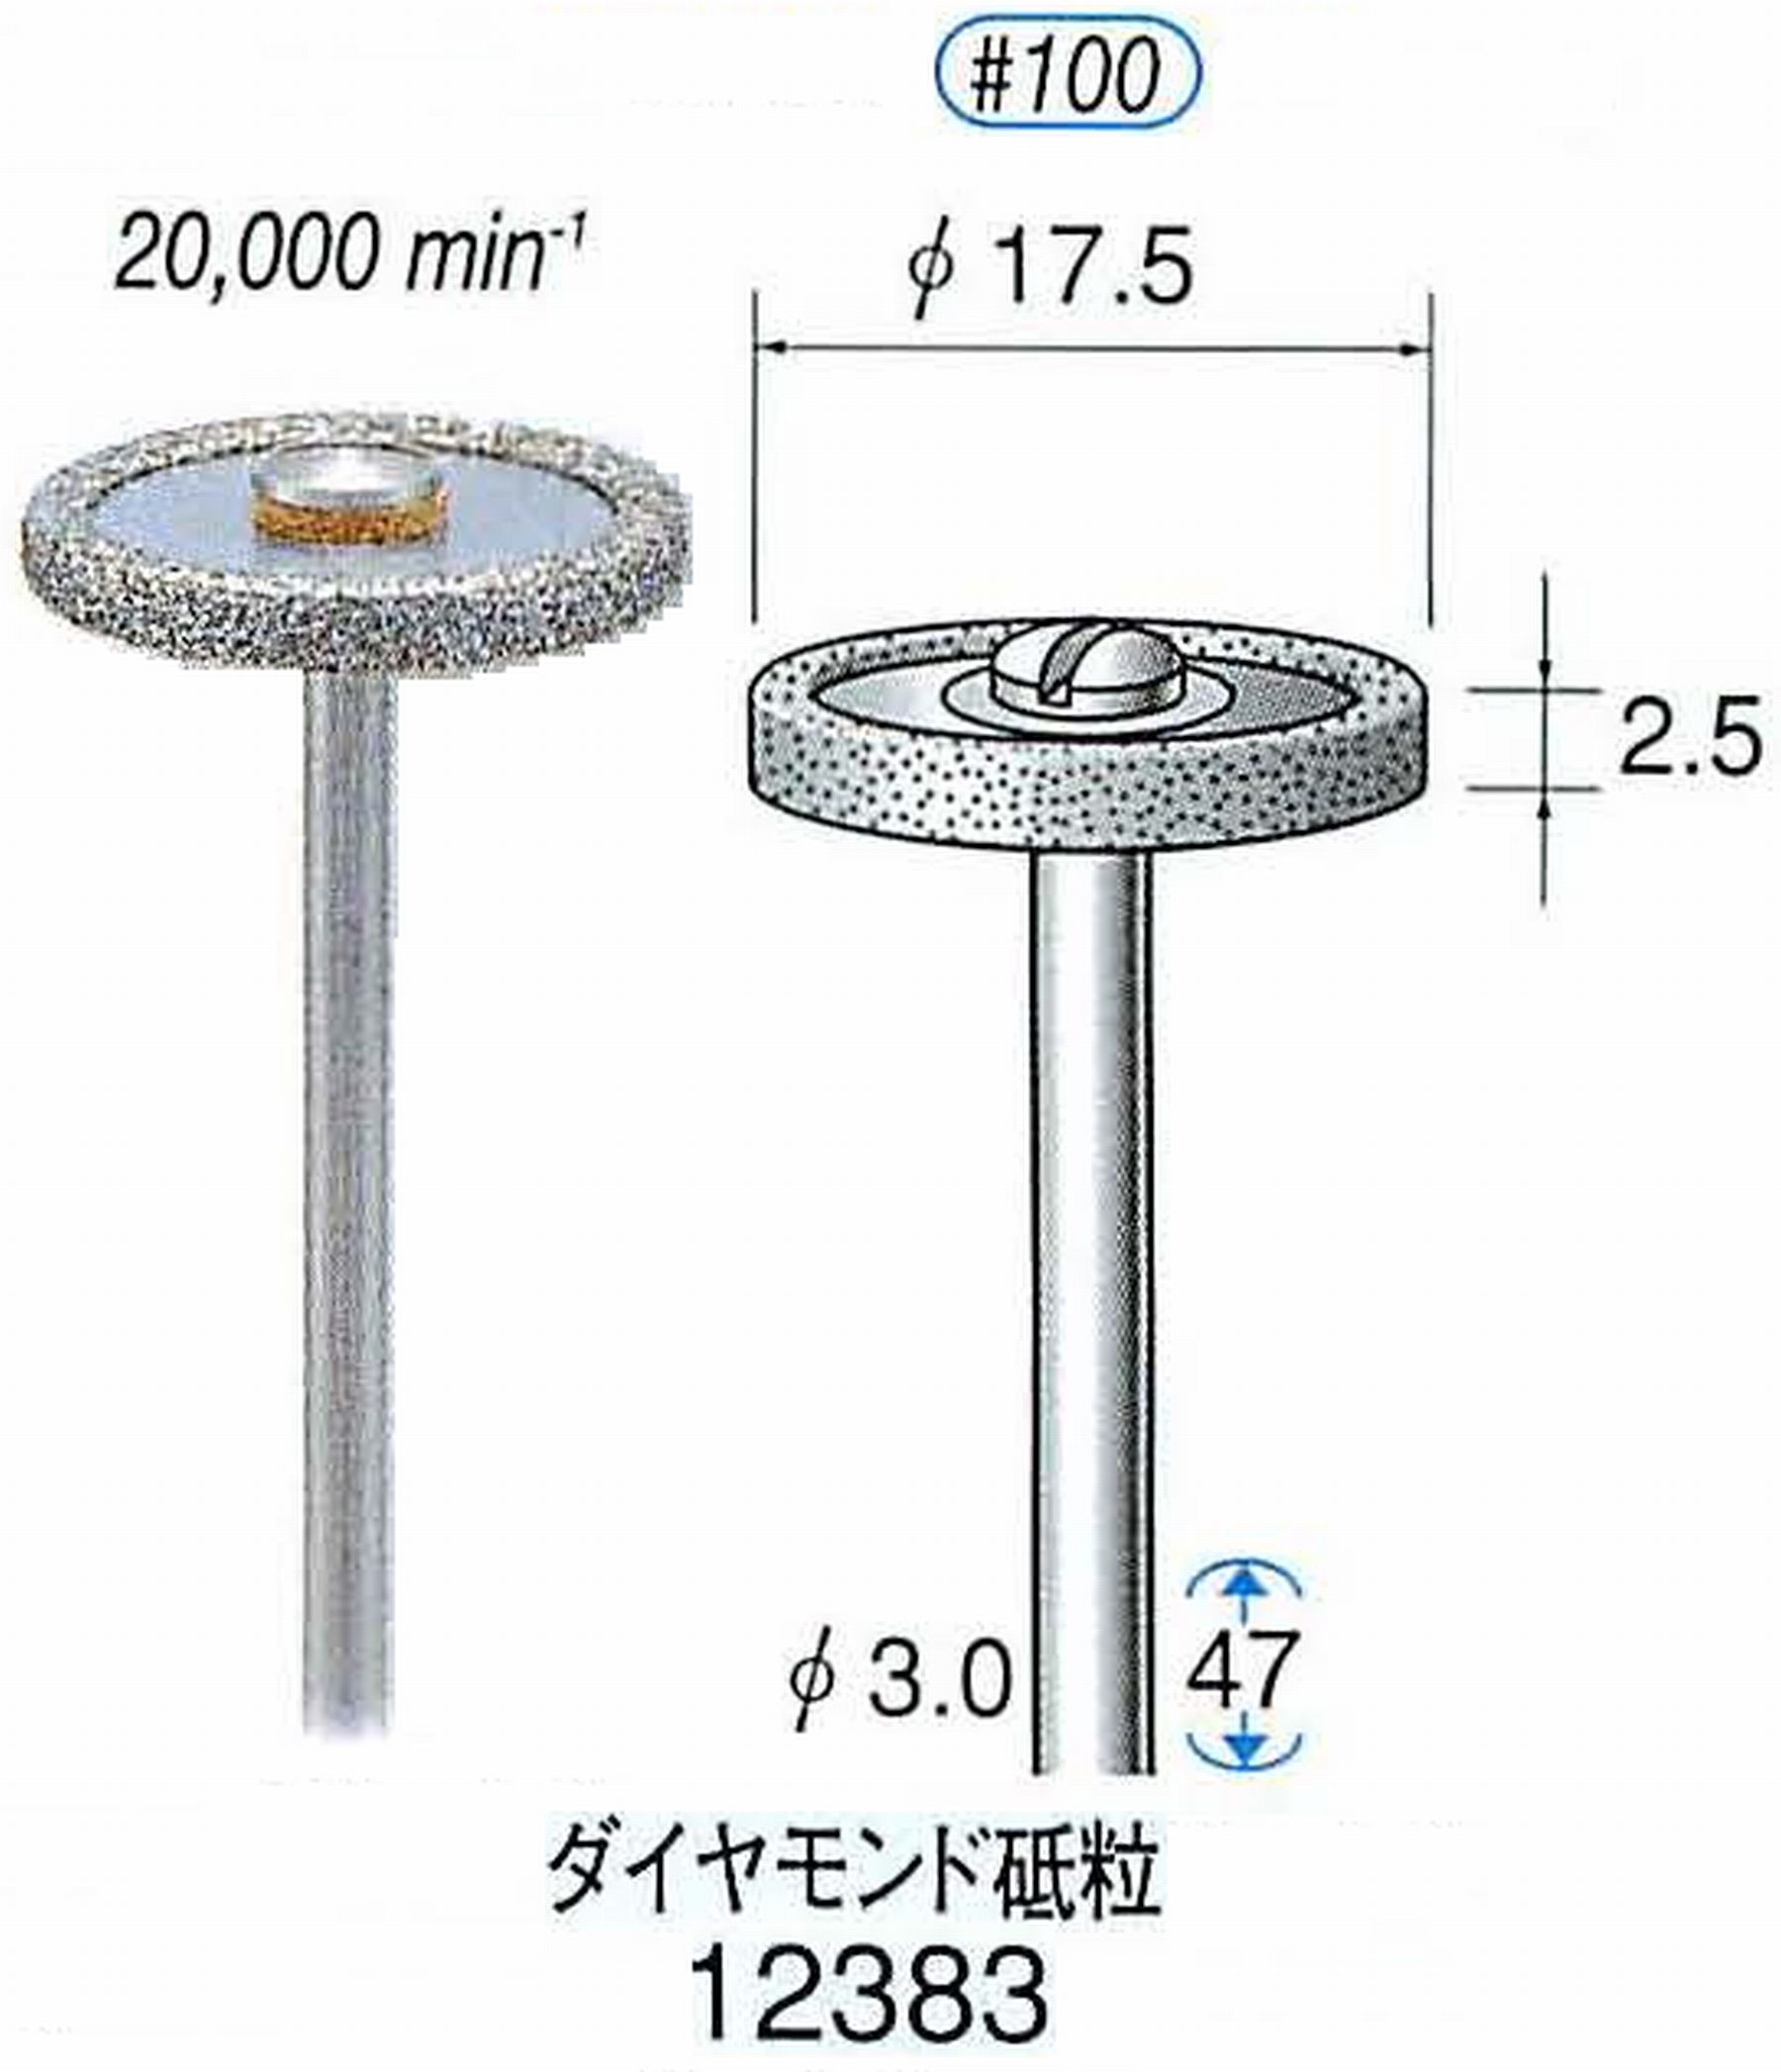 ナカニシ/NAKANISHI 電着ダイヤモンド ダイヤモンド砥粒 軸径(シャンク)φ3.0mm 12383